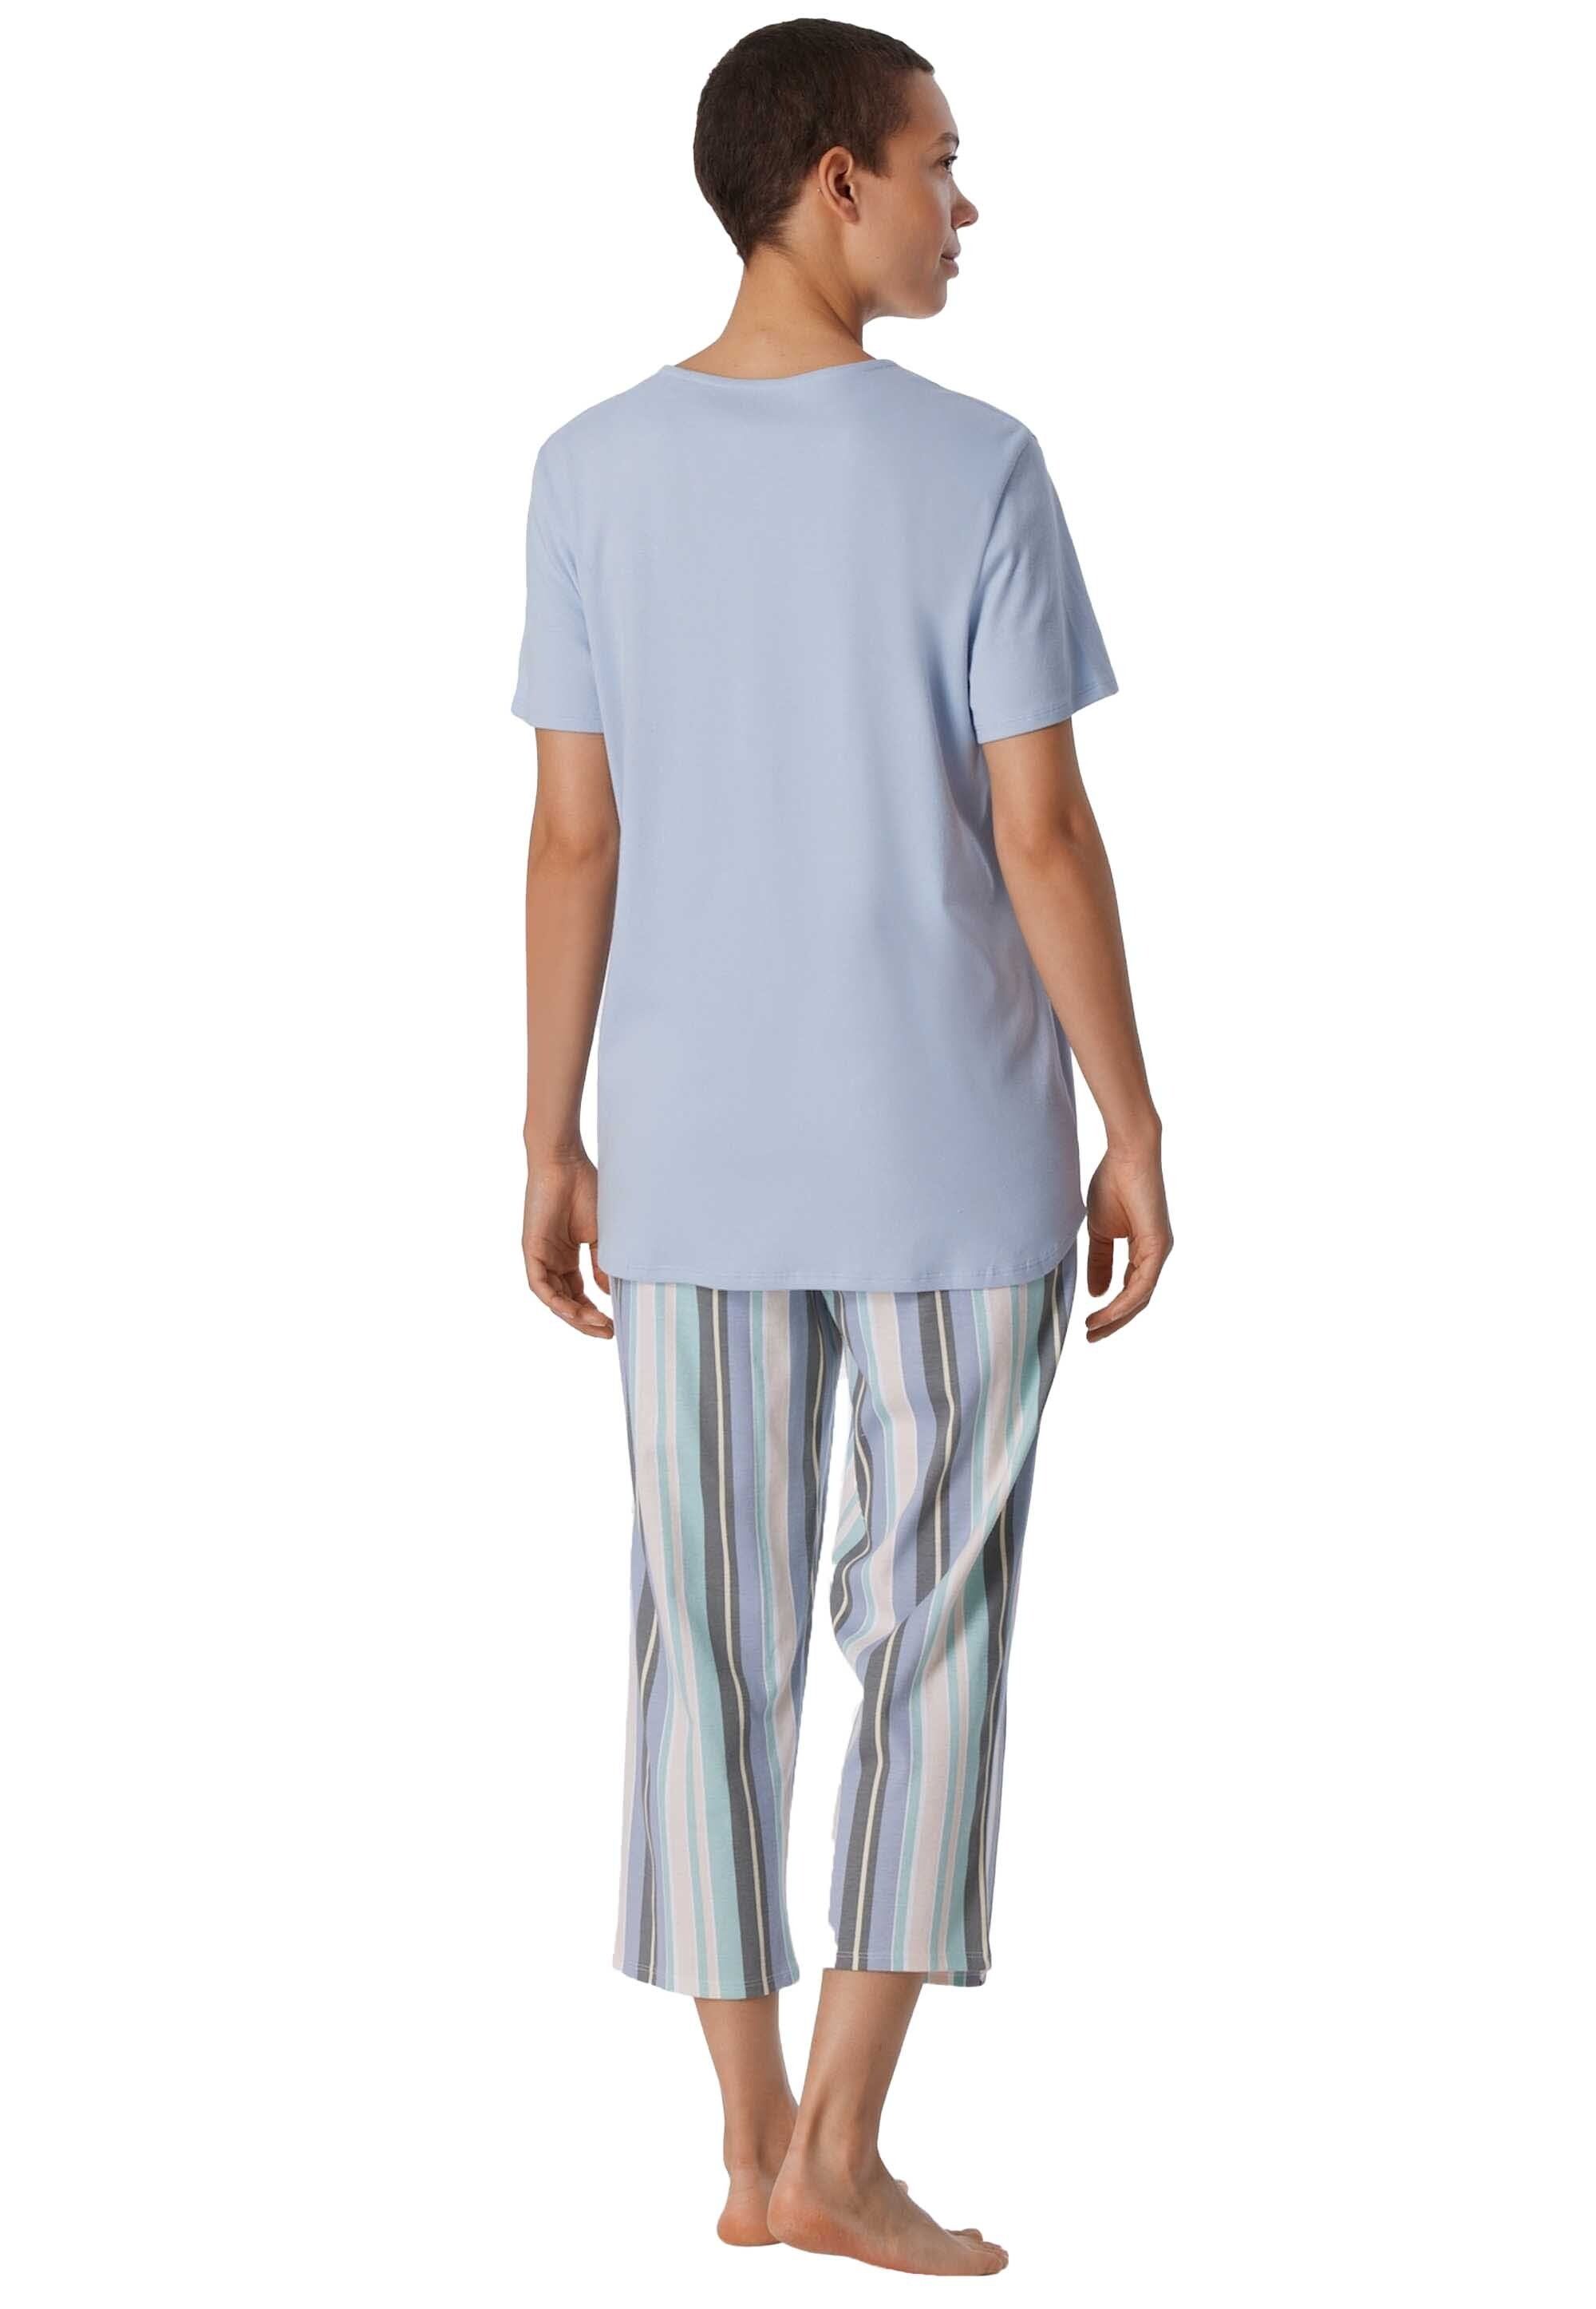 1/2 3/4 Pyjama Hellblau - Damen Nachtwäsche, Schlafanzug Schiesser Arm